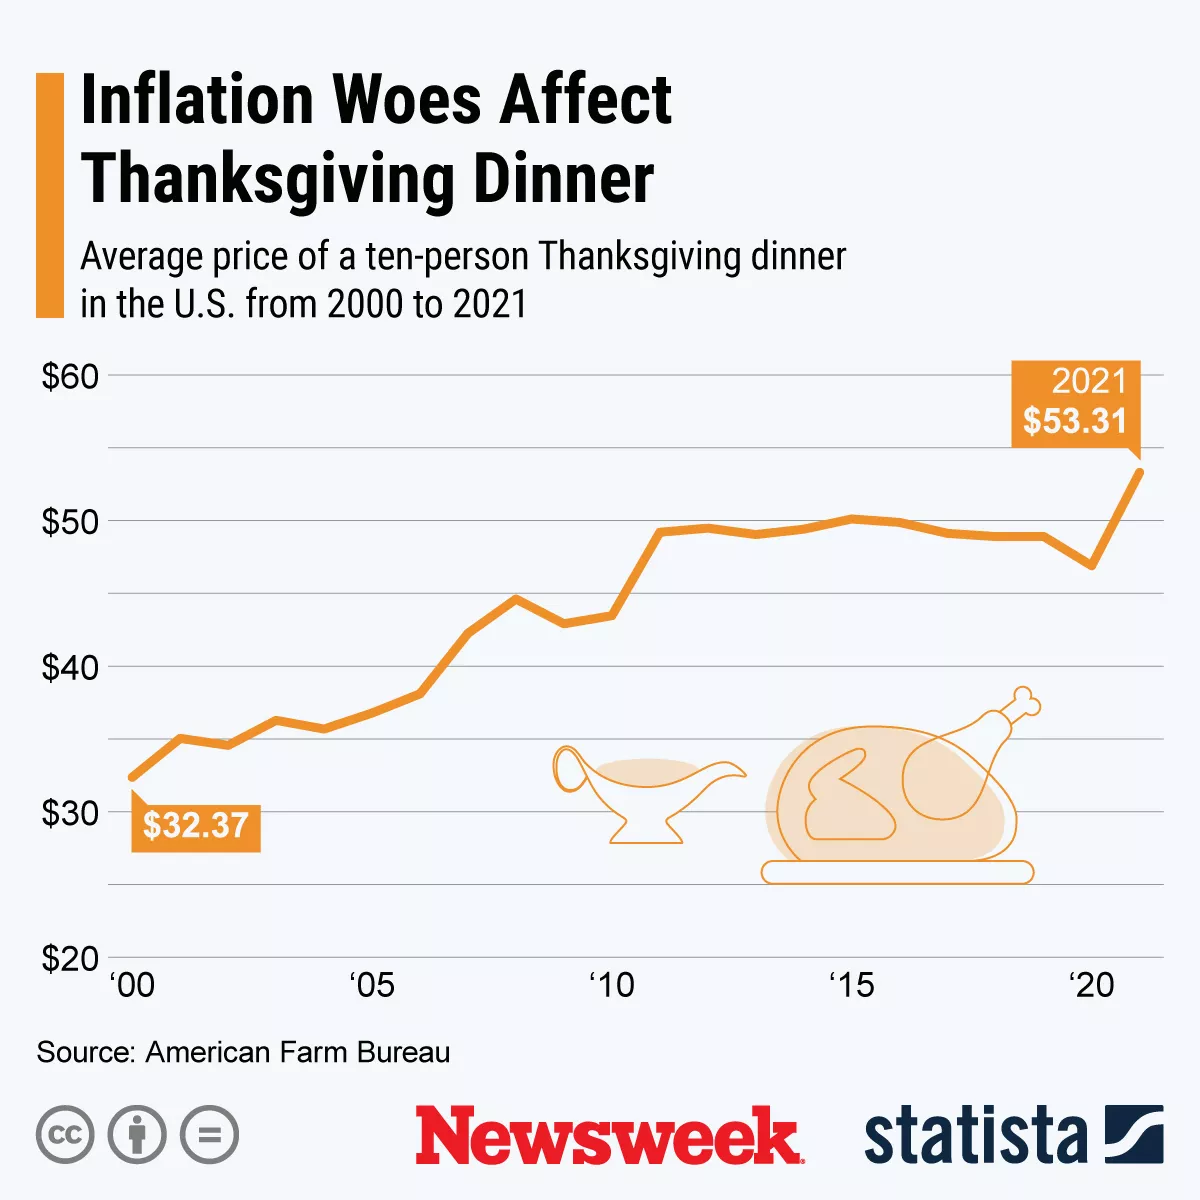 感謝祭へのインフレの影響を示す図。